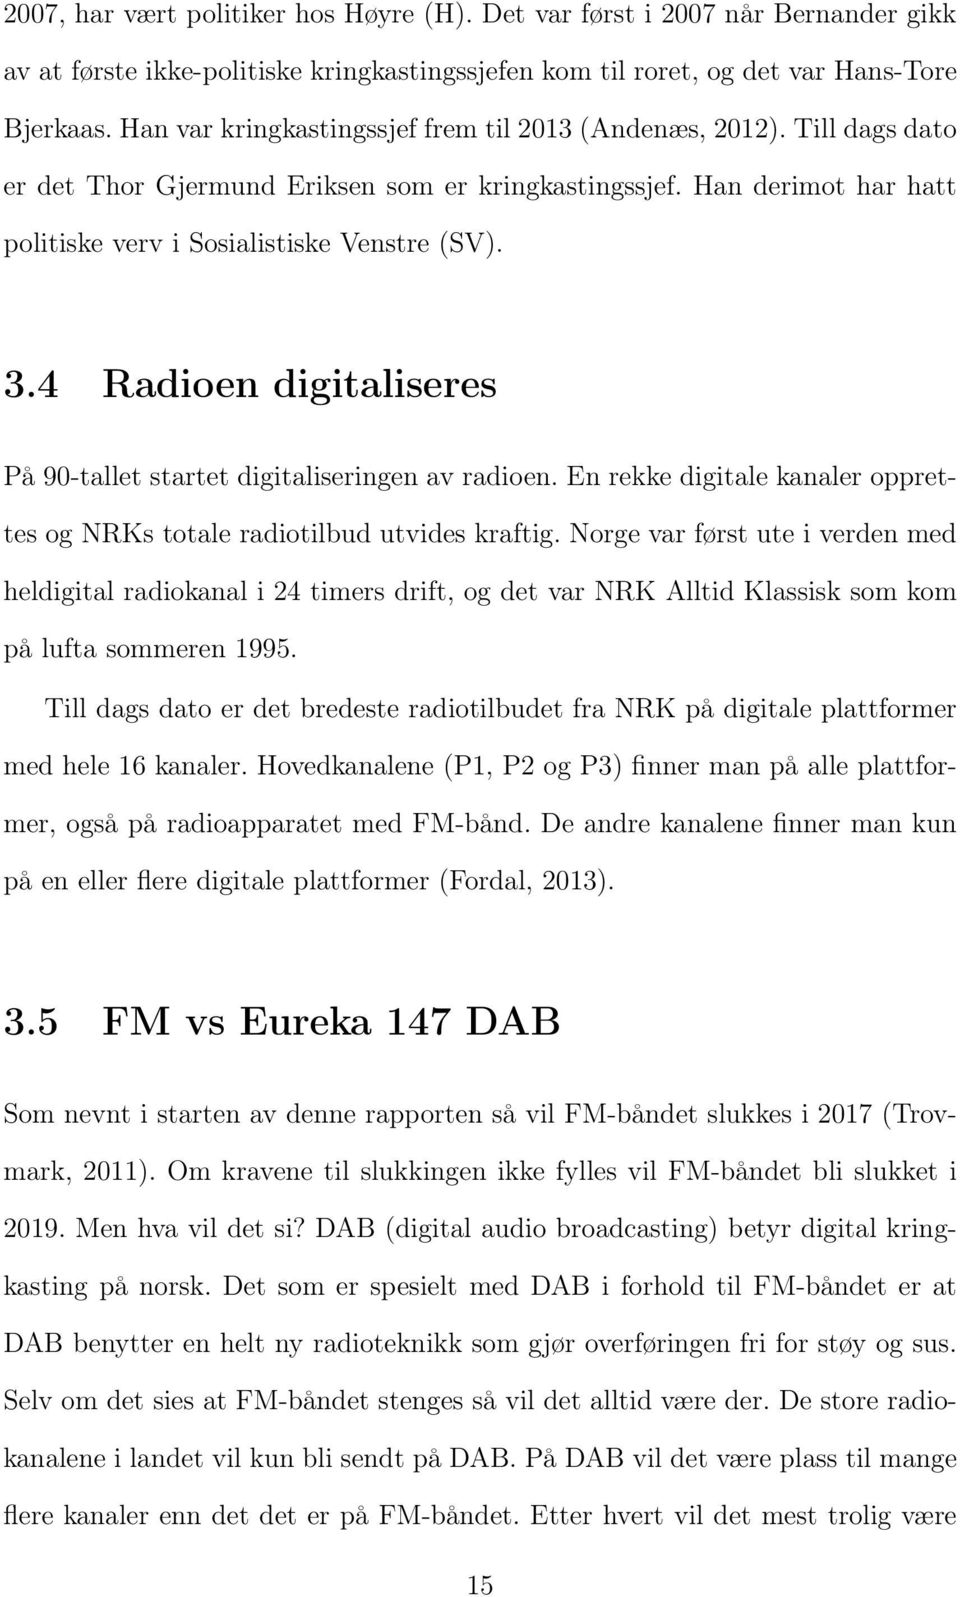 4 Radioen digitaliseres På 90-tallet startet digitaliseringen av radioen. En rekke digitale kanaler opprettes og NRKs totale radiotilbud utvides kraftig.